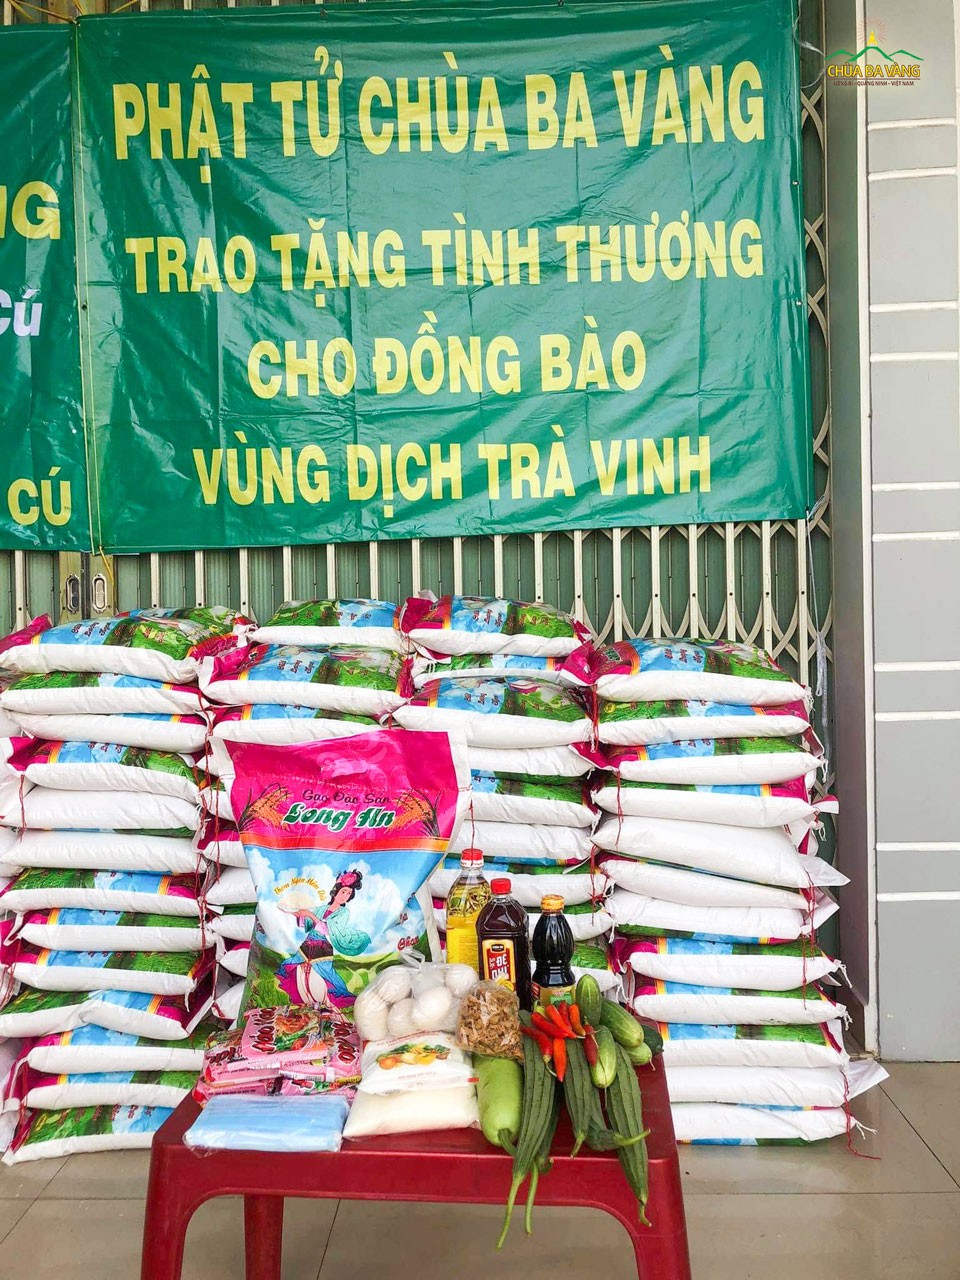 Những nhu yếu phẩm thiết yếu trao gửi tới bà con huyện Trà Cú bao gồm: gạo, rau củ, dầu ăn,...  